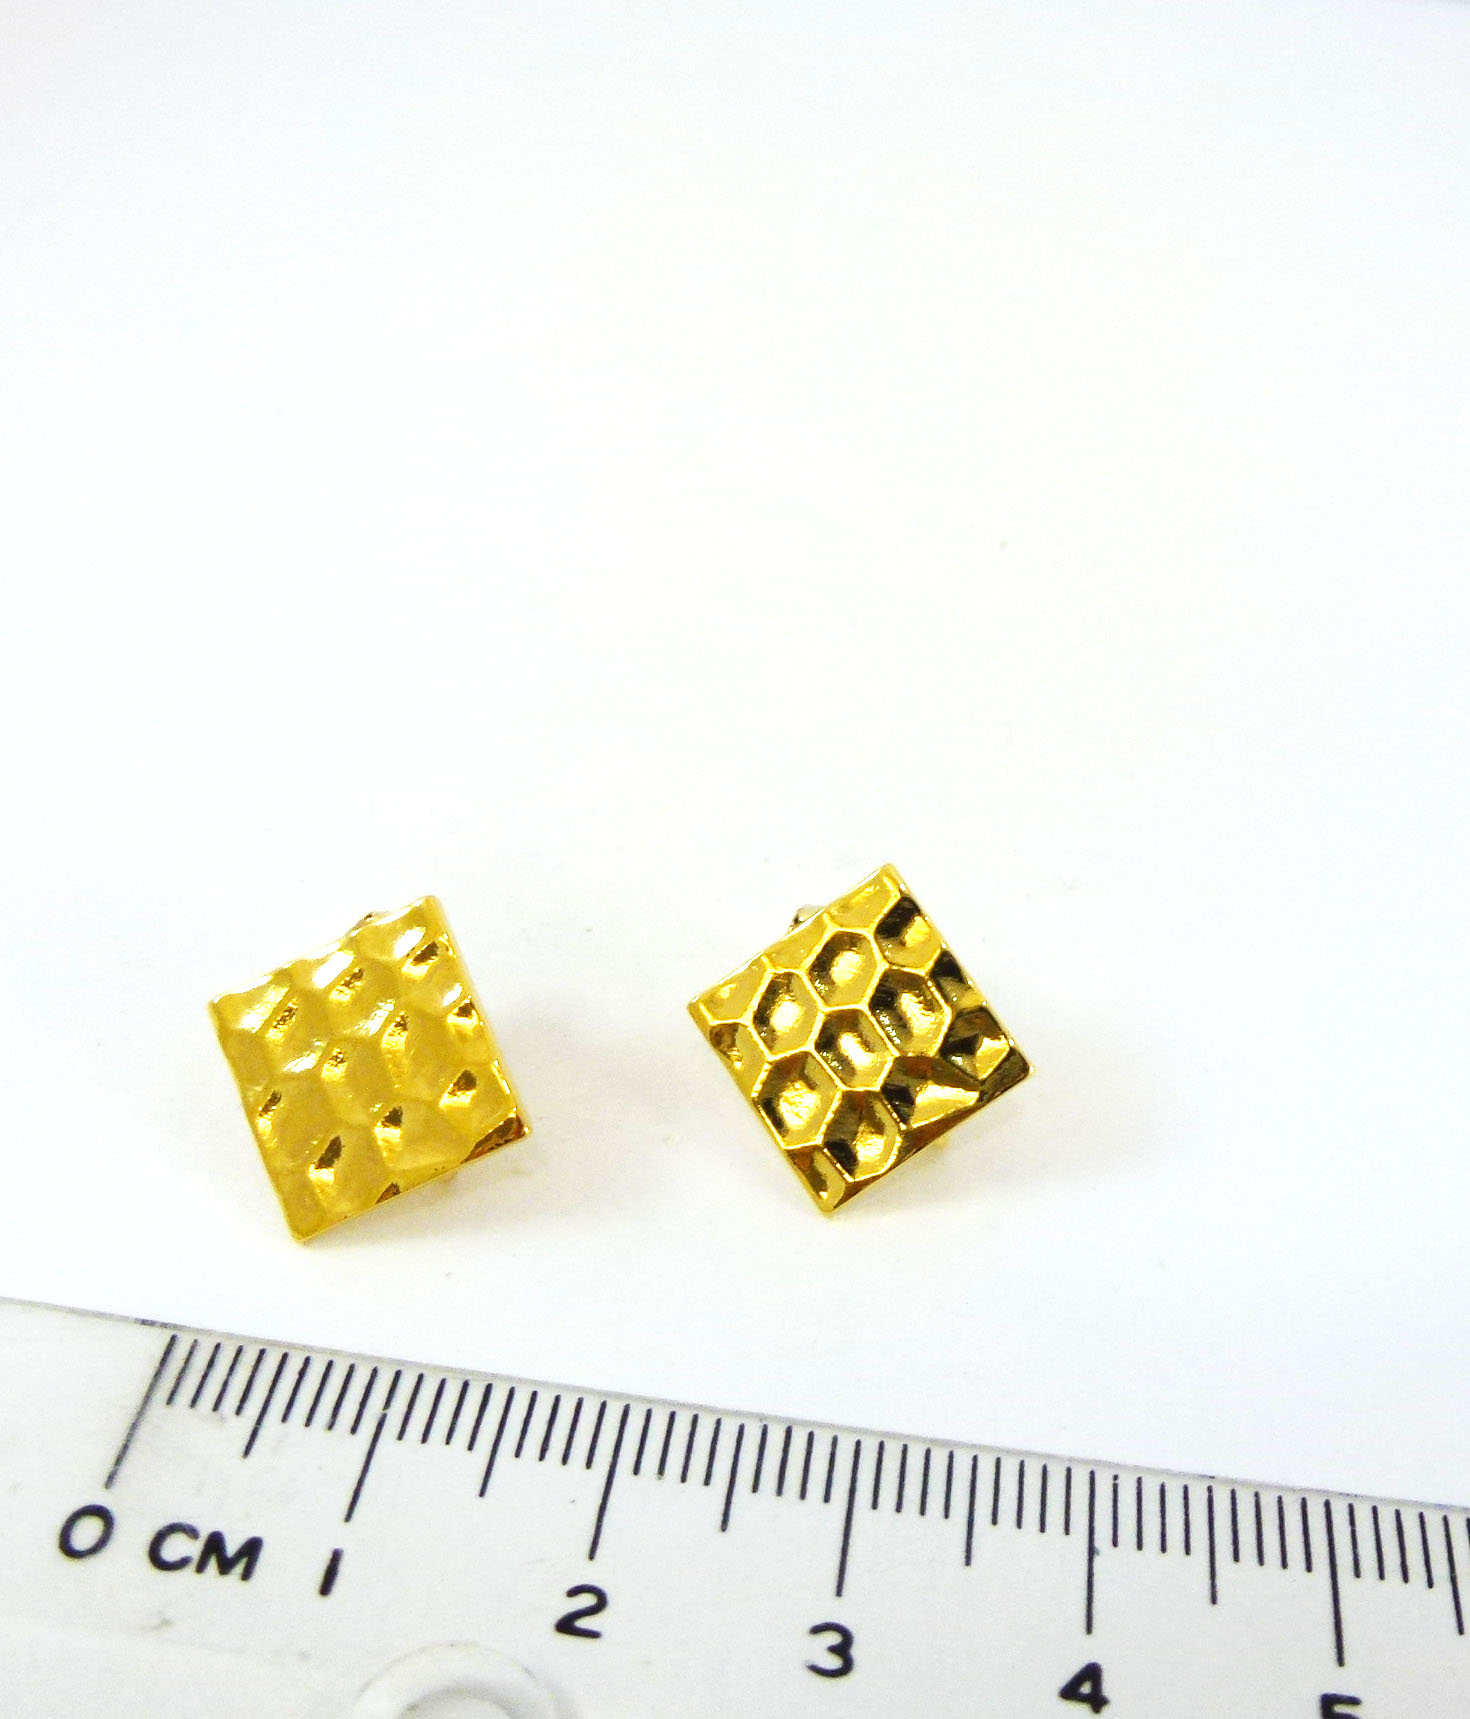 12mm銅鍍金色正方形蜂巢紋不銹鋼耳針